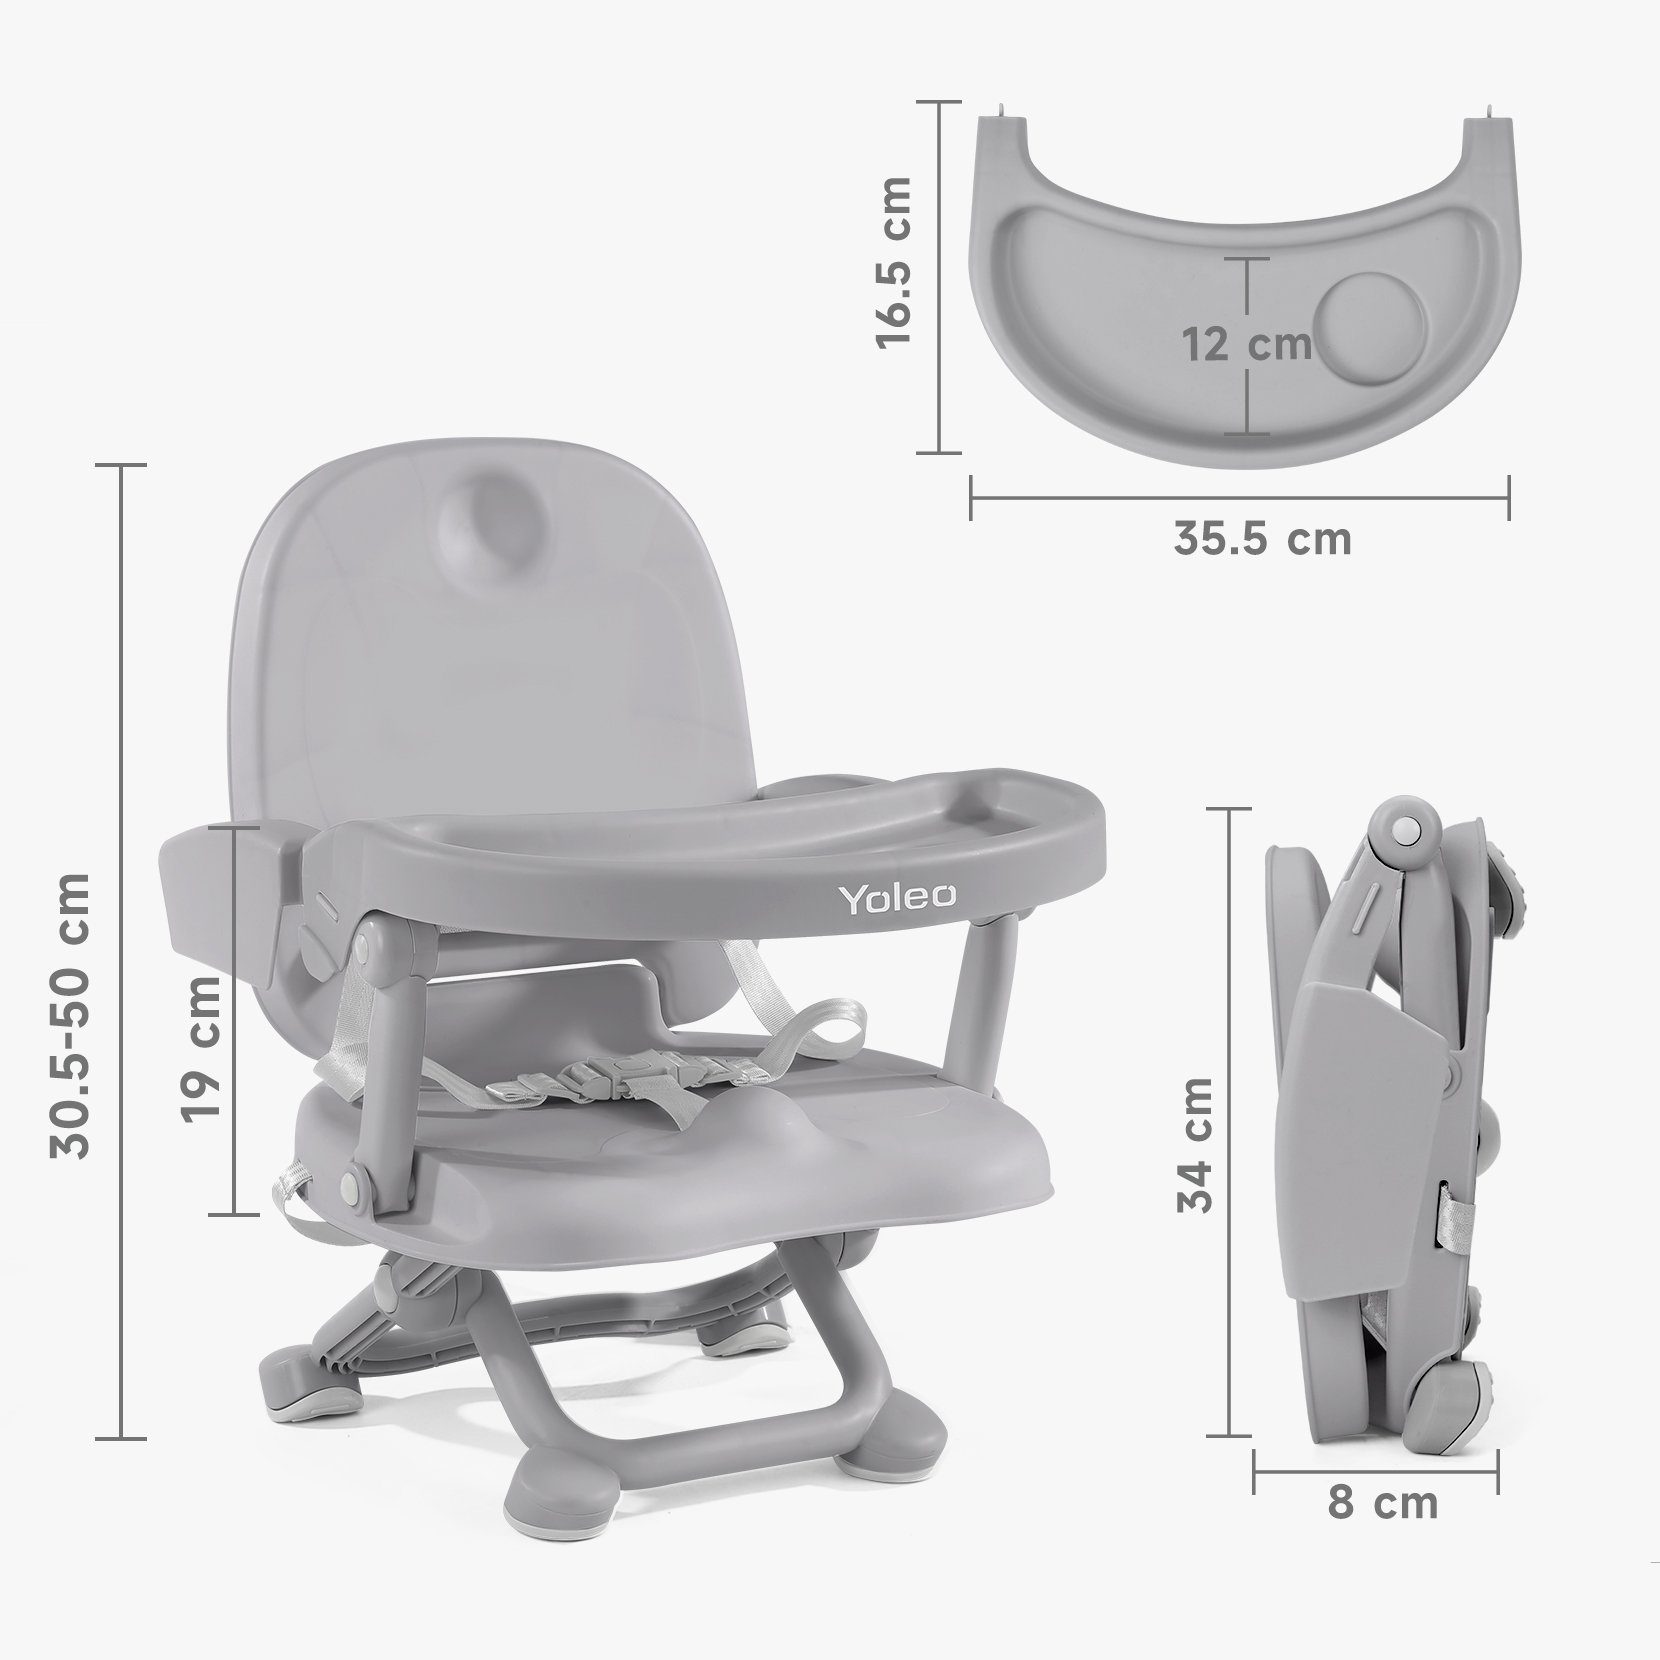 Reisehochstuhl einfache tragbar sicher, und für leicht und faltbar YOLEO YOLEO grau Reinigung, Unterwegs, strukturiert Praktisch, sein Booster Verstellbarkeit, Babys, Sitzerhöhung für stabil